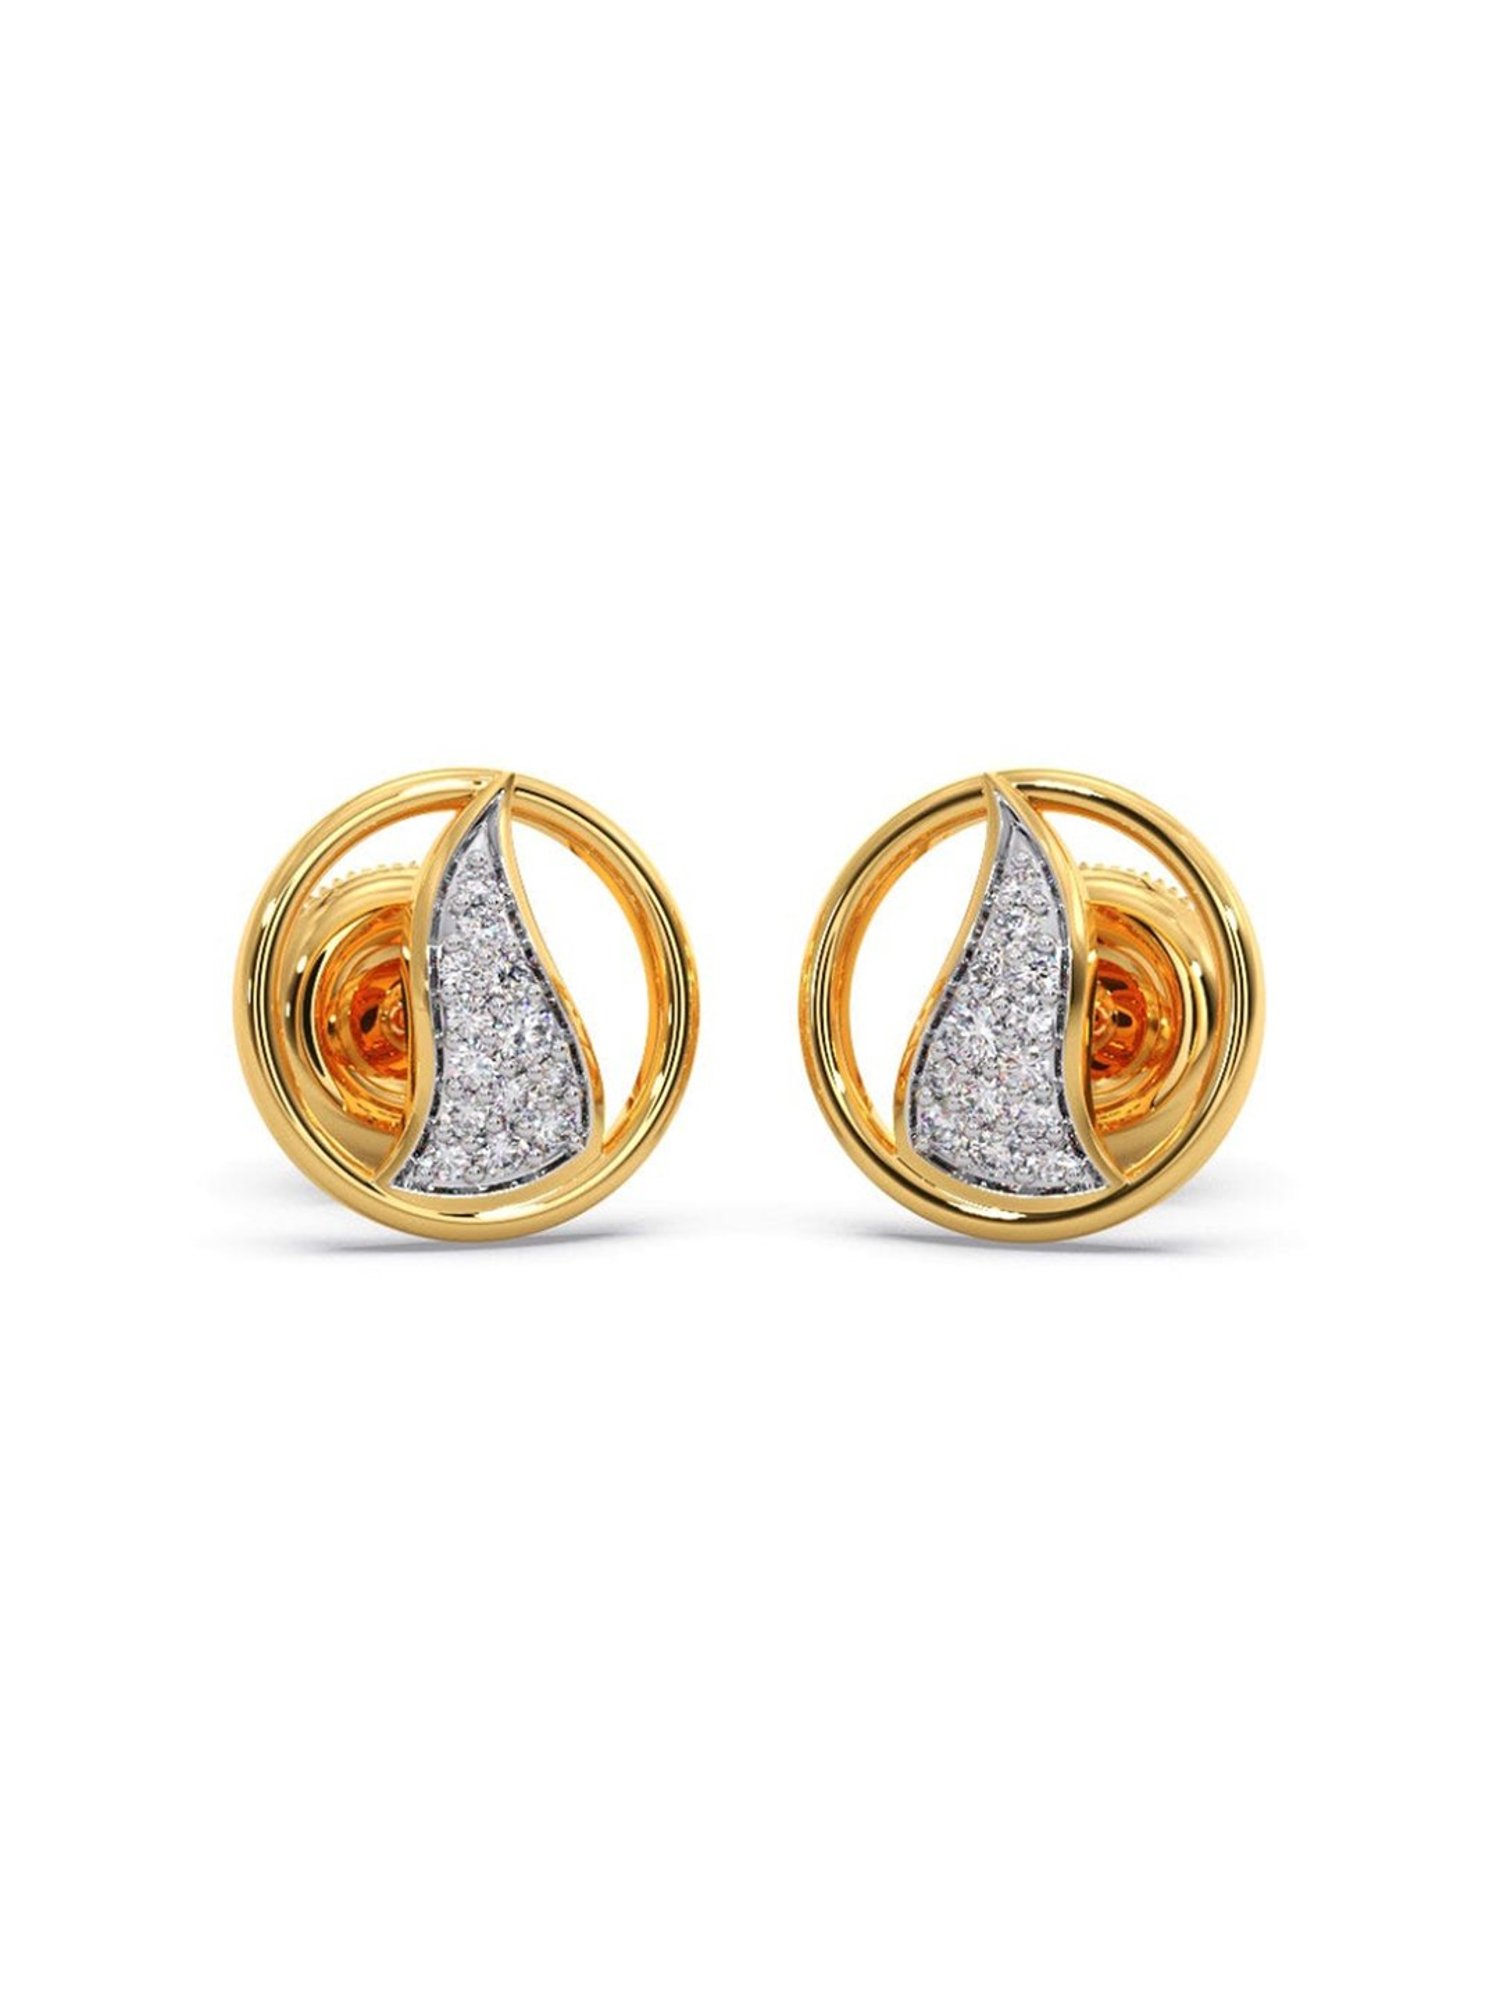 Gold Earrings Designs 2022/Trendy Gold Earrings Designs/Daily Wear Gold  Earring With Weight 2022 | Gold earrings designs, Designer earrings, Gold  earrings